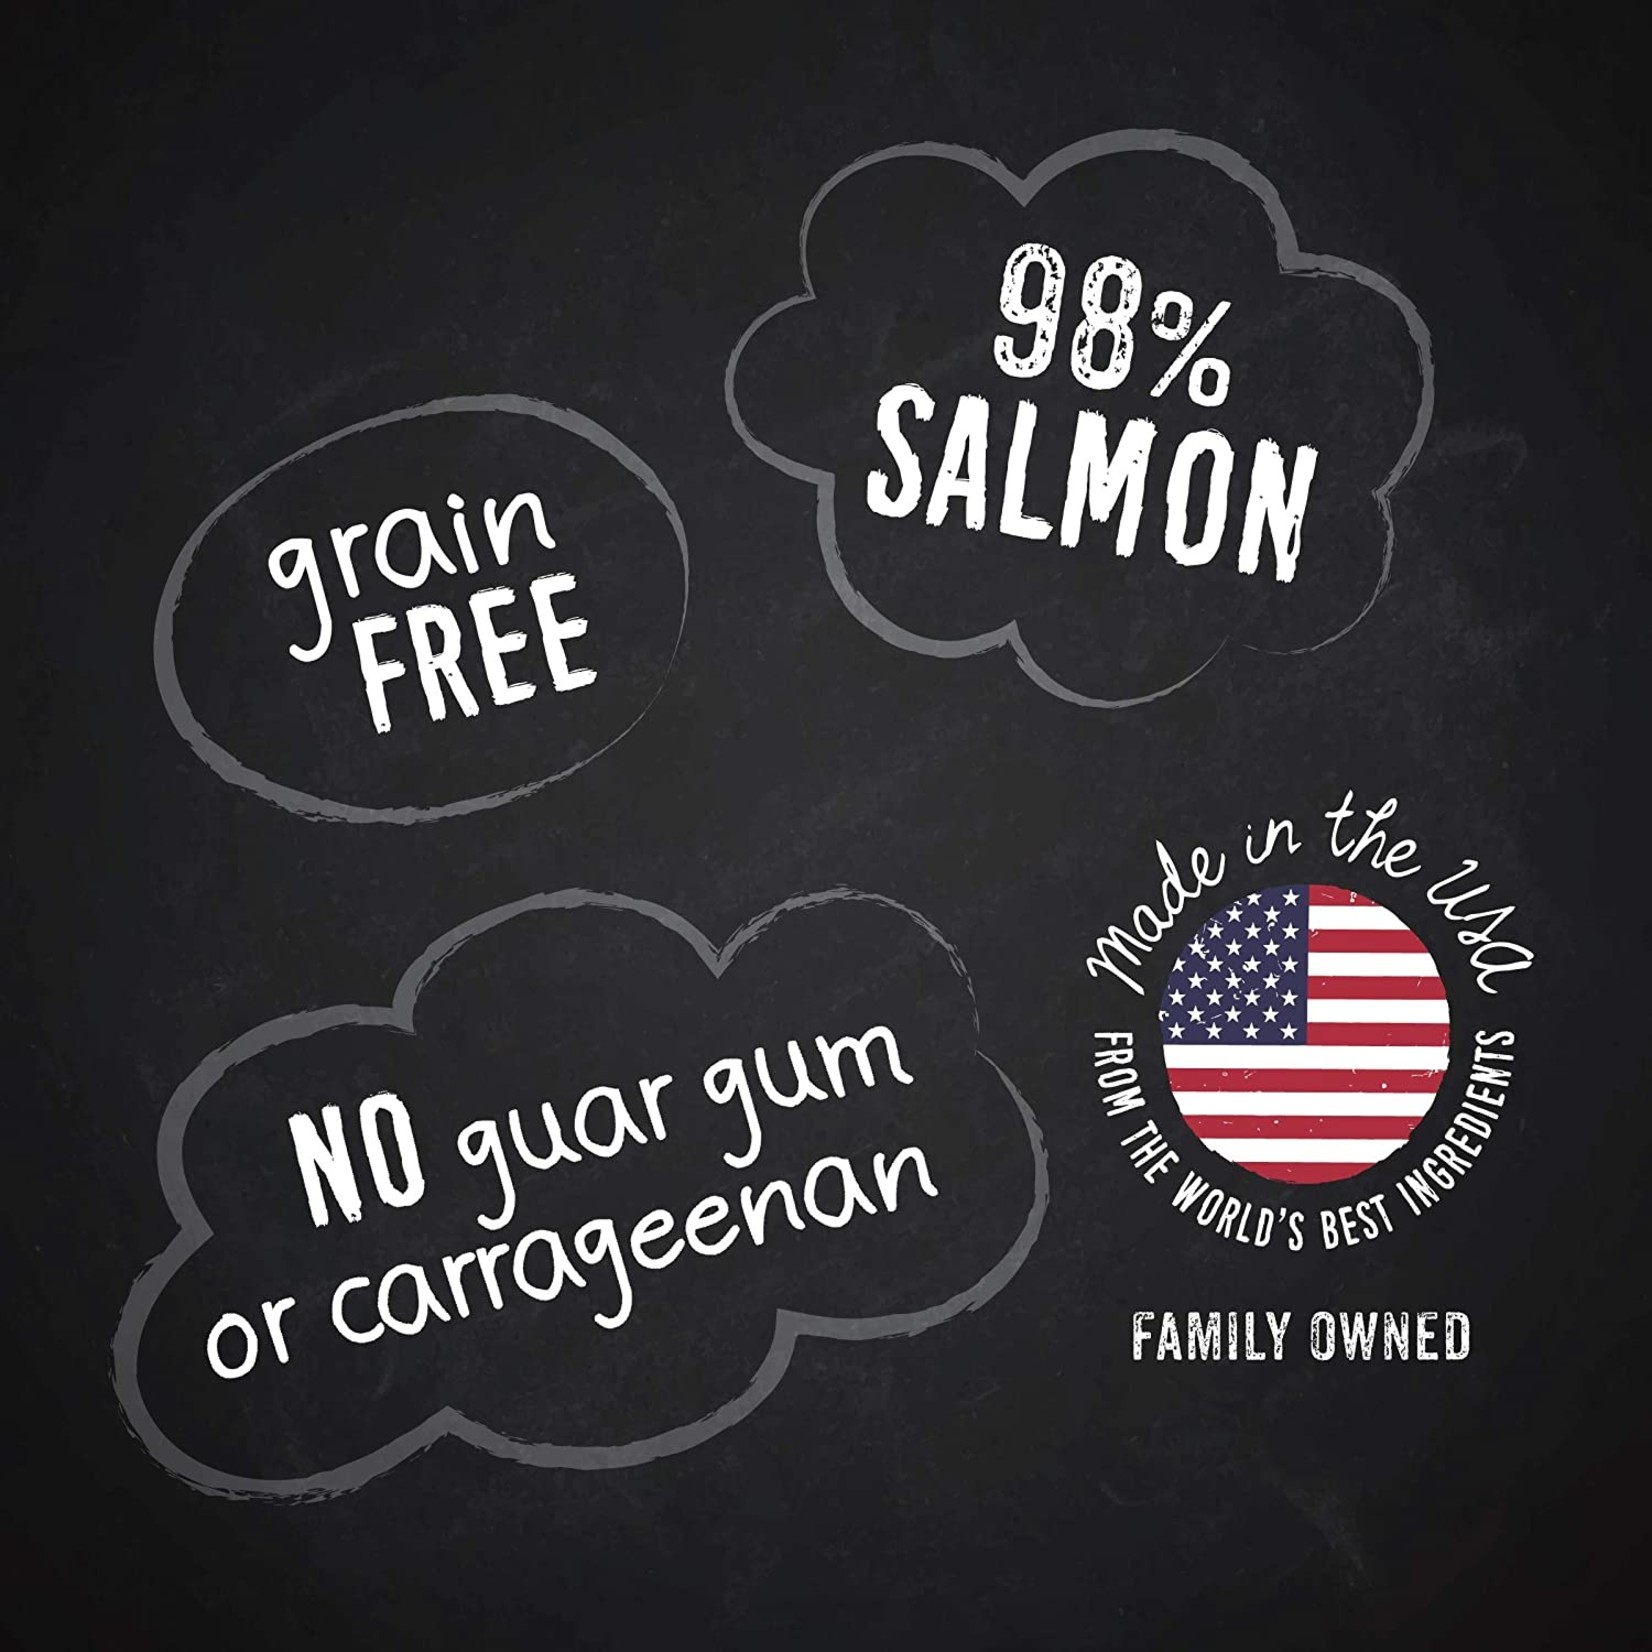 Hound & Gatos Hound & Gatos Salmon Cat Grain Free 5.5 oz